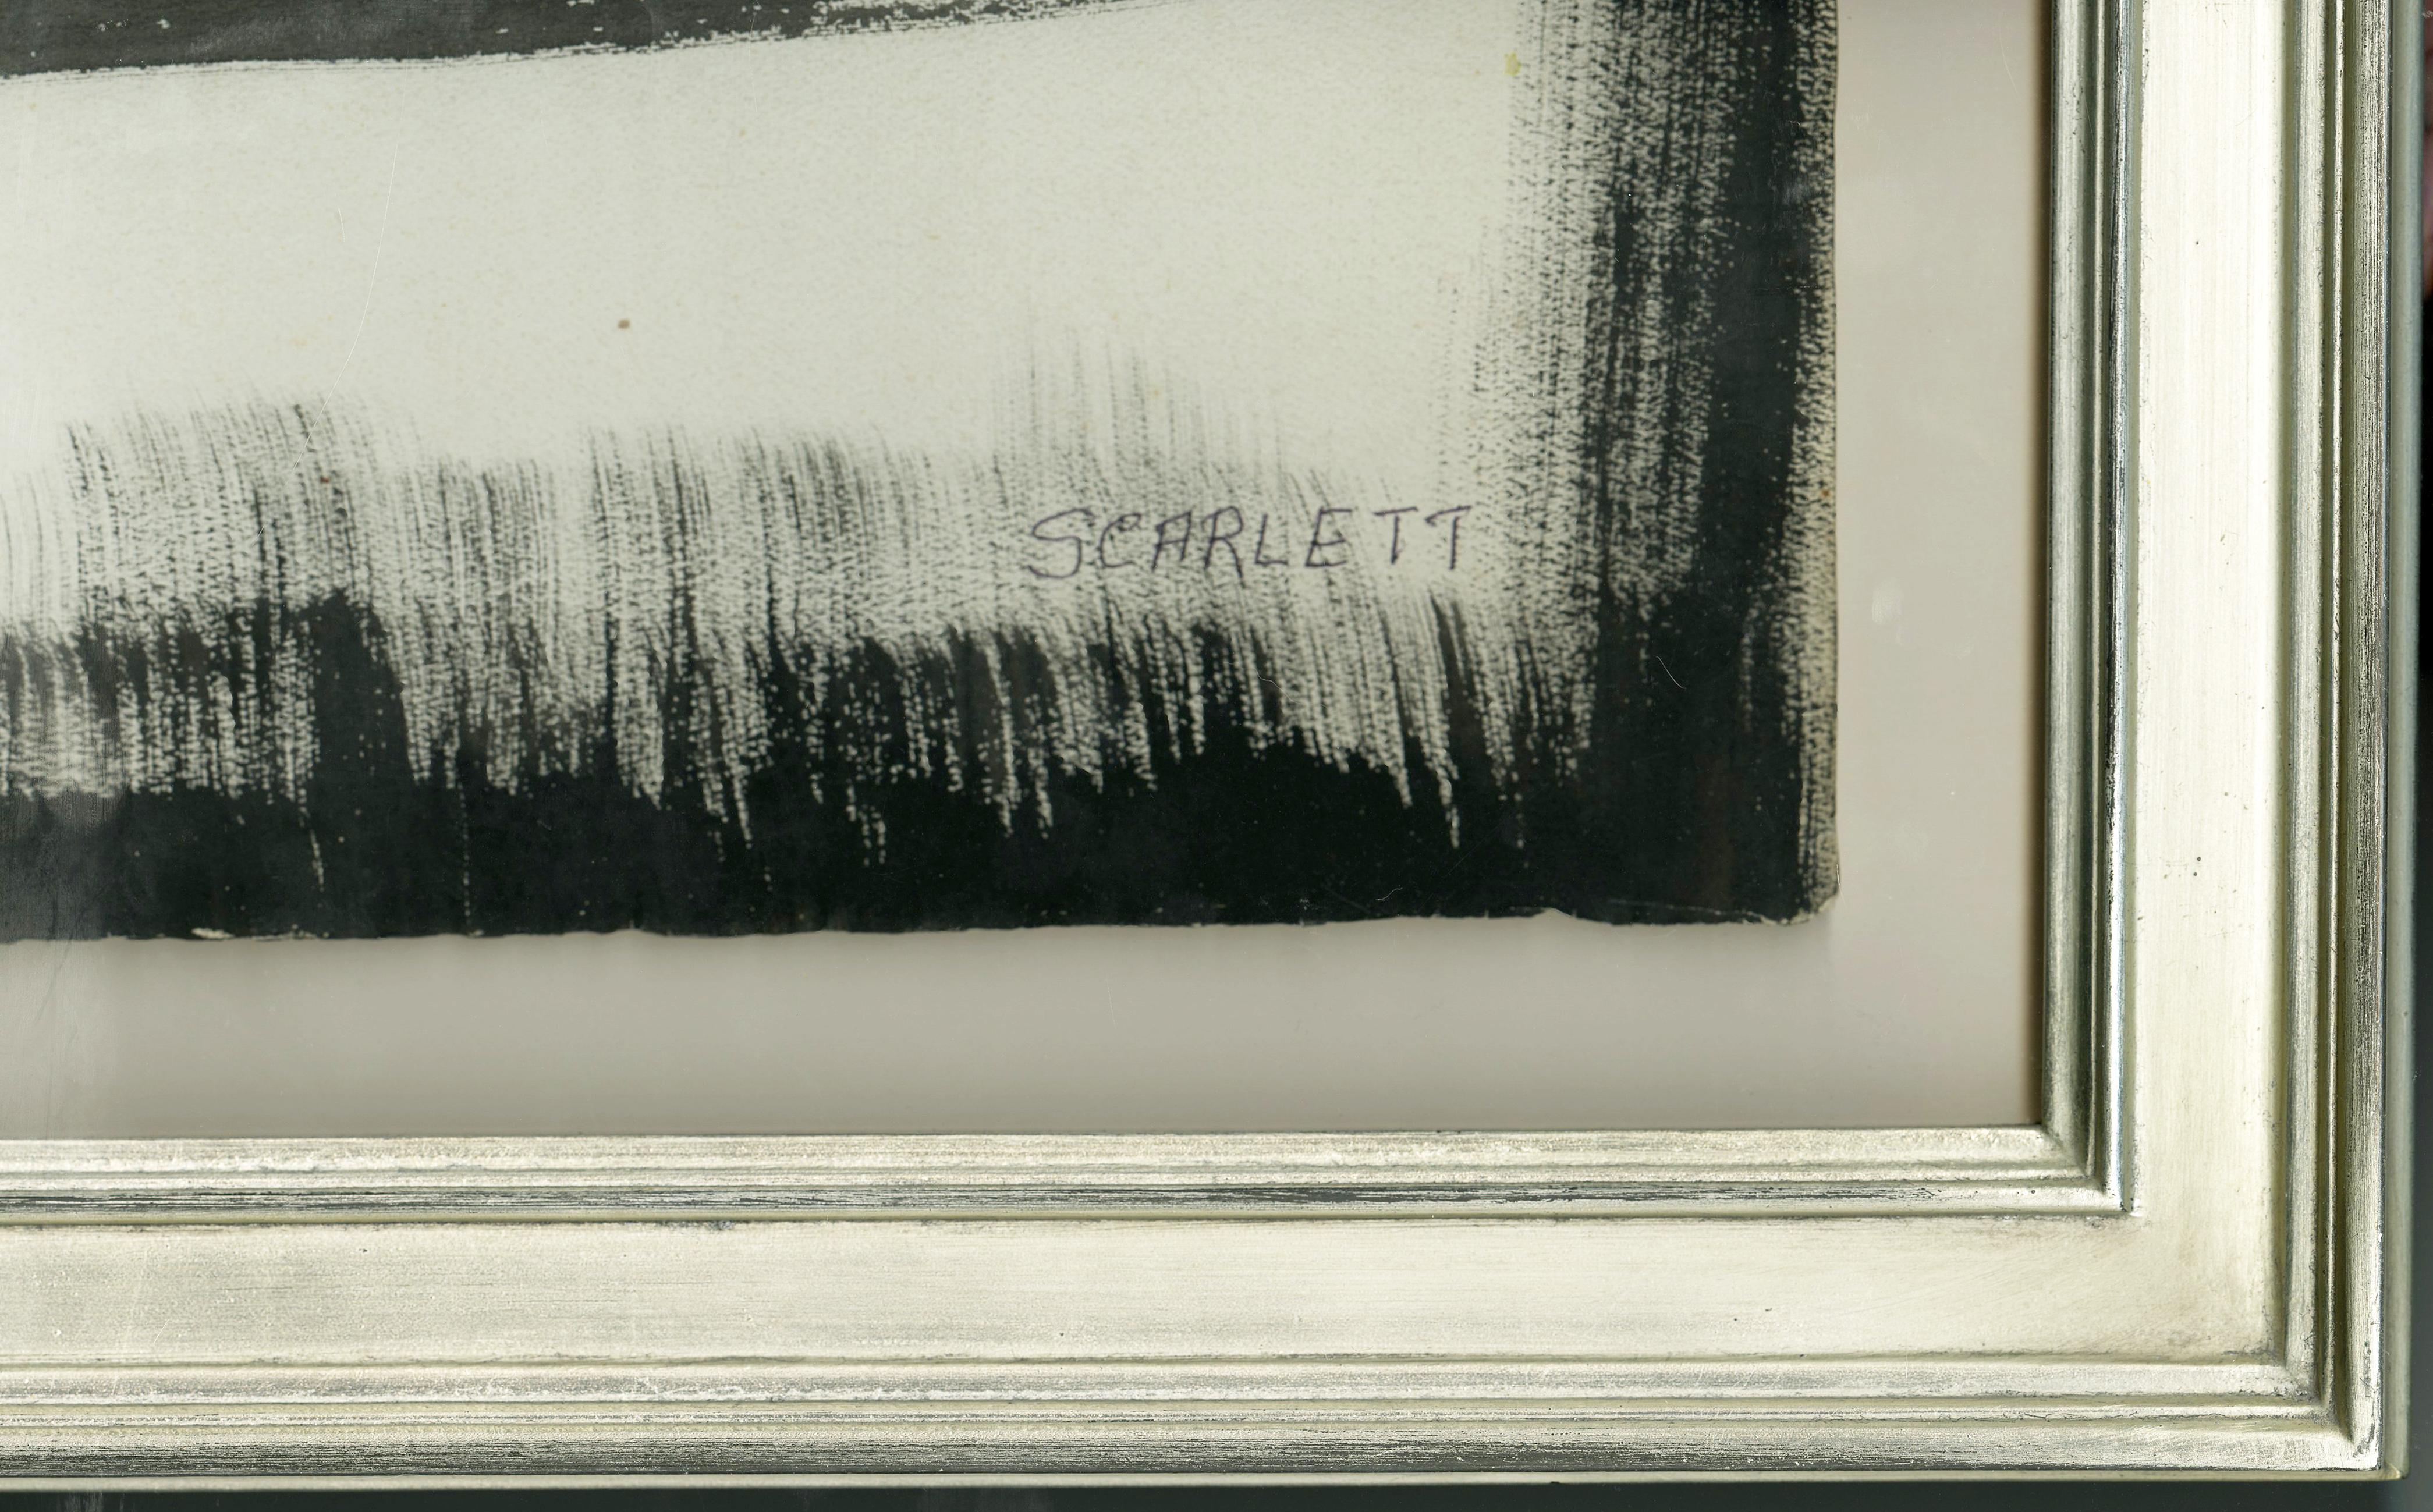 Sans titre (Abstraction)
Encre sur papier texturé, c. 1958
Signé en bas à droite 